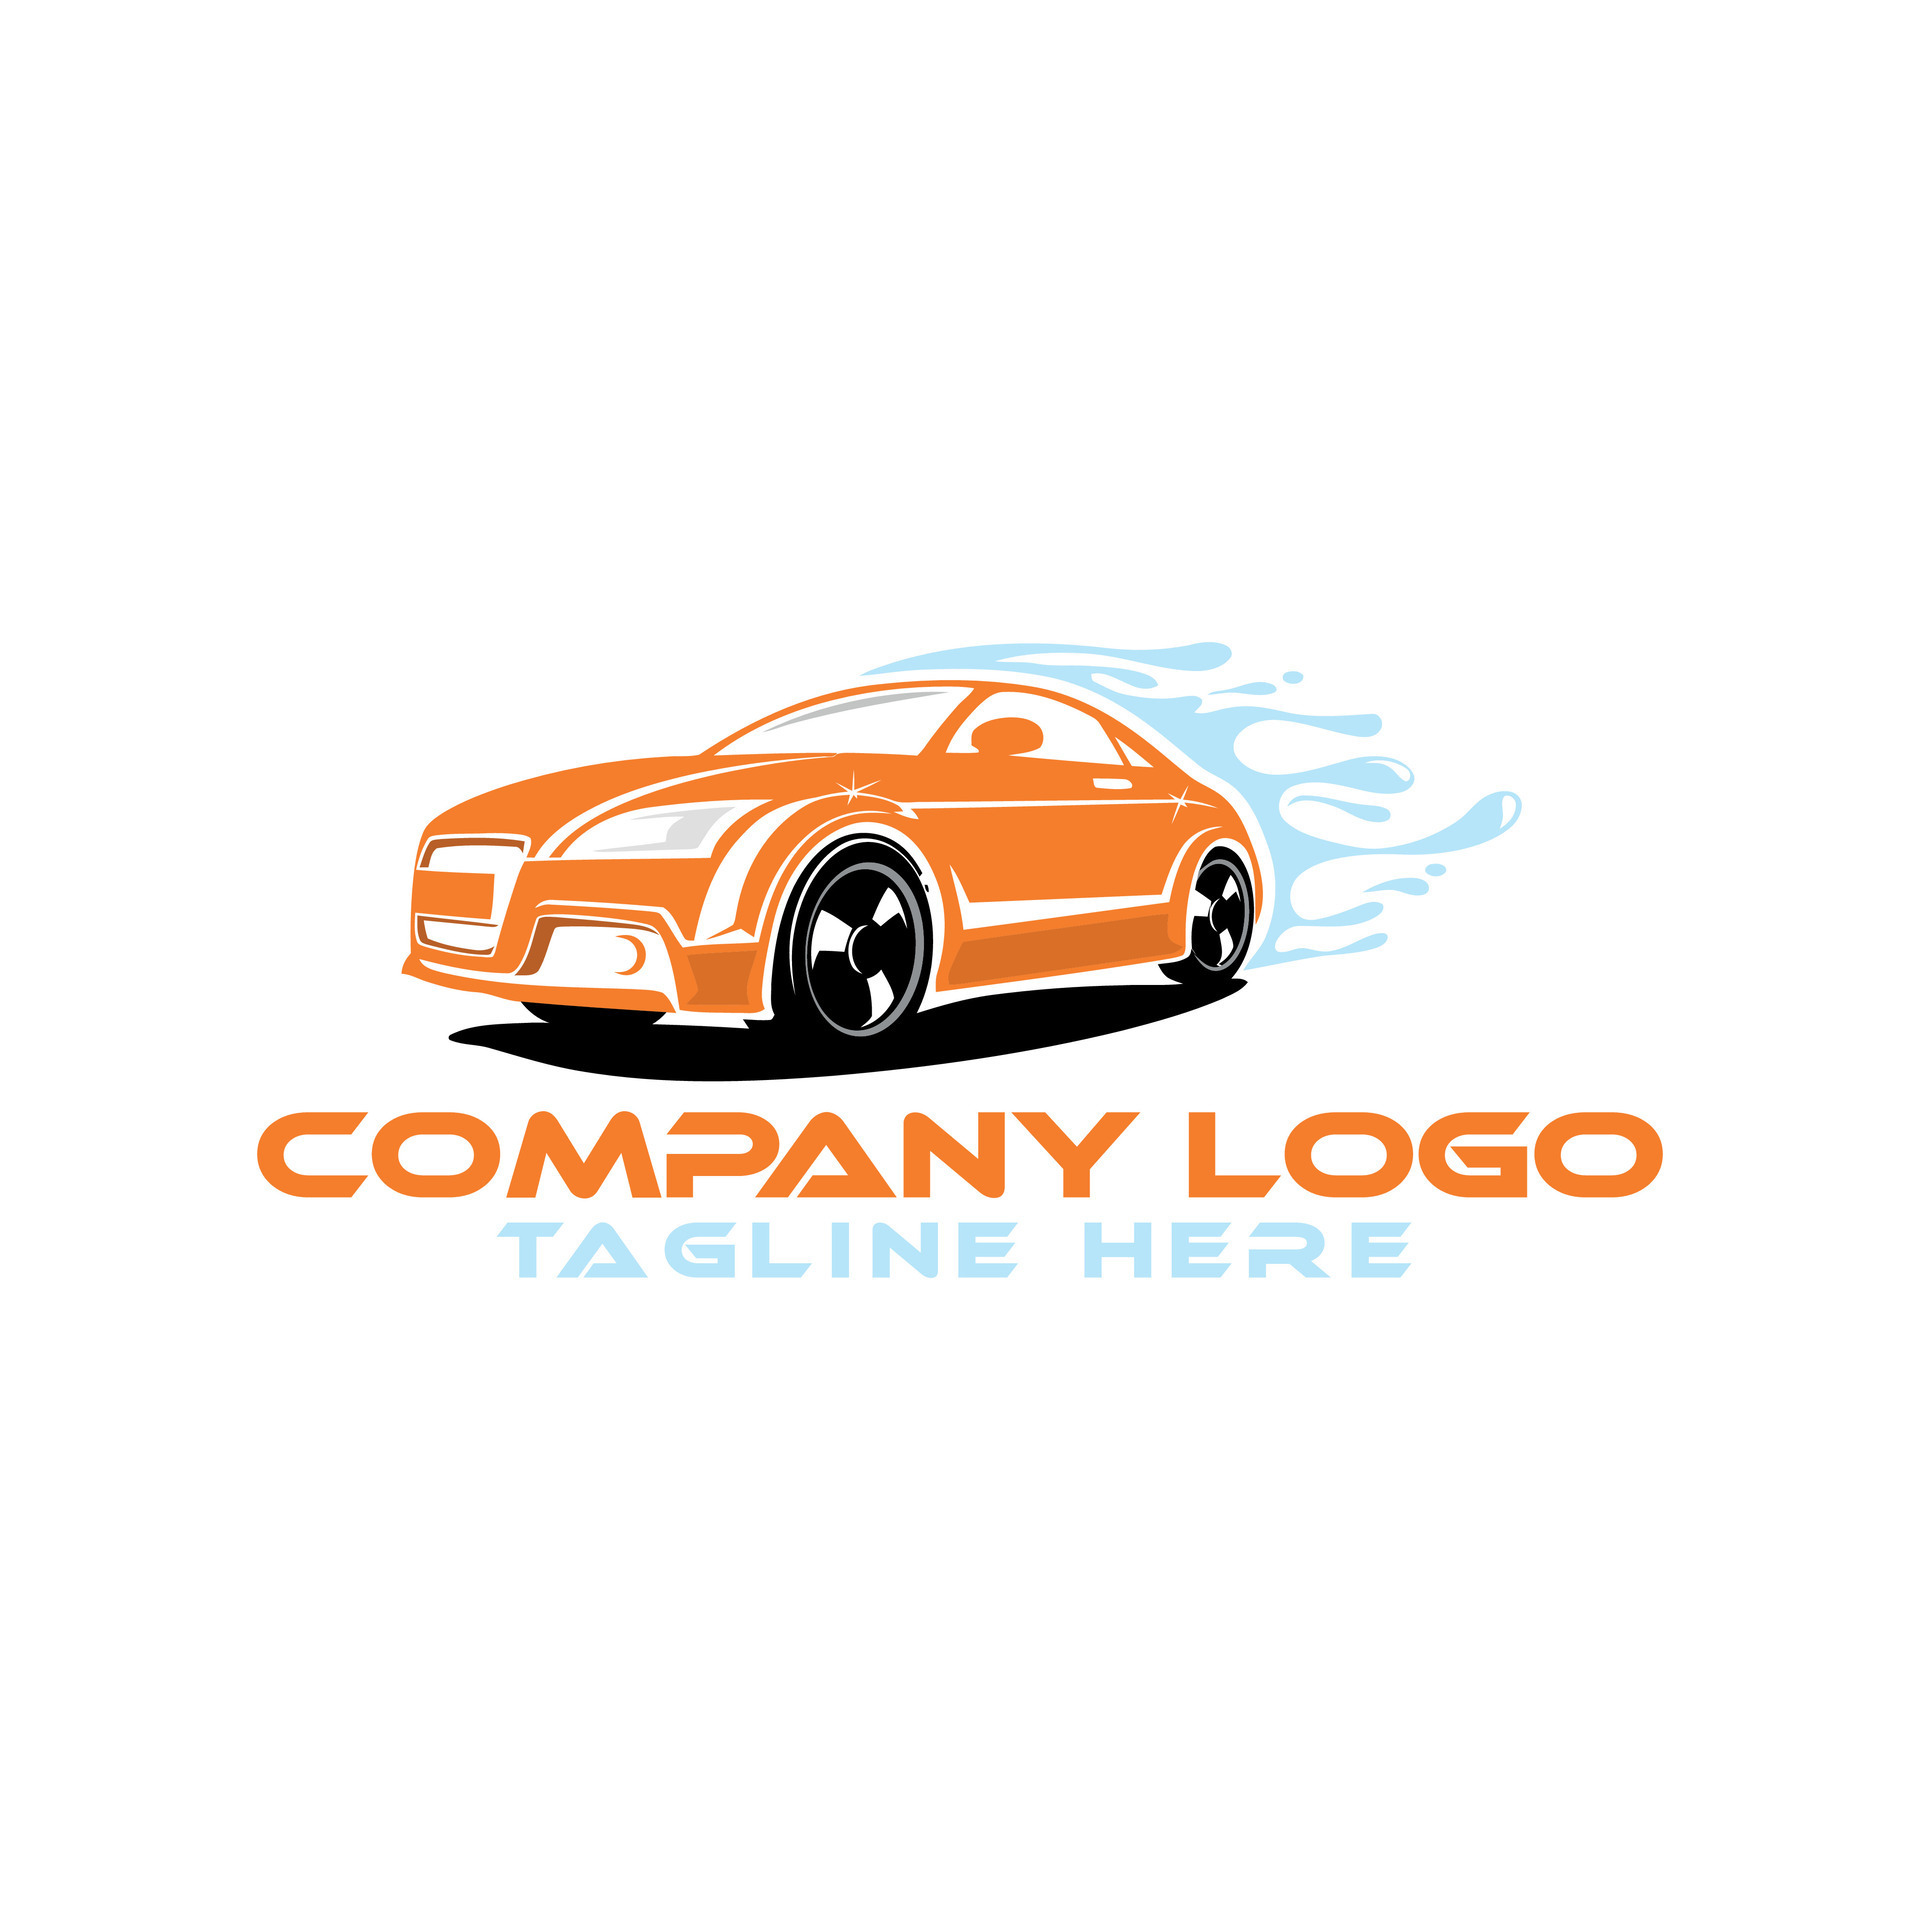 Auto garage brand logo vector design concept